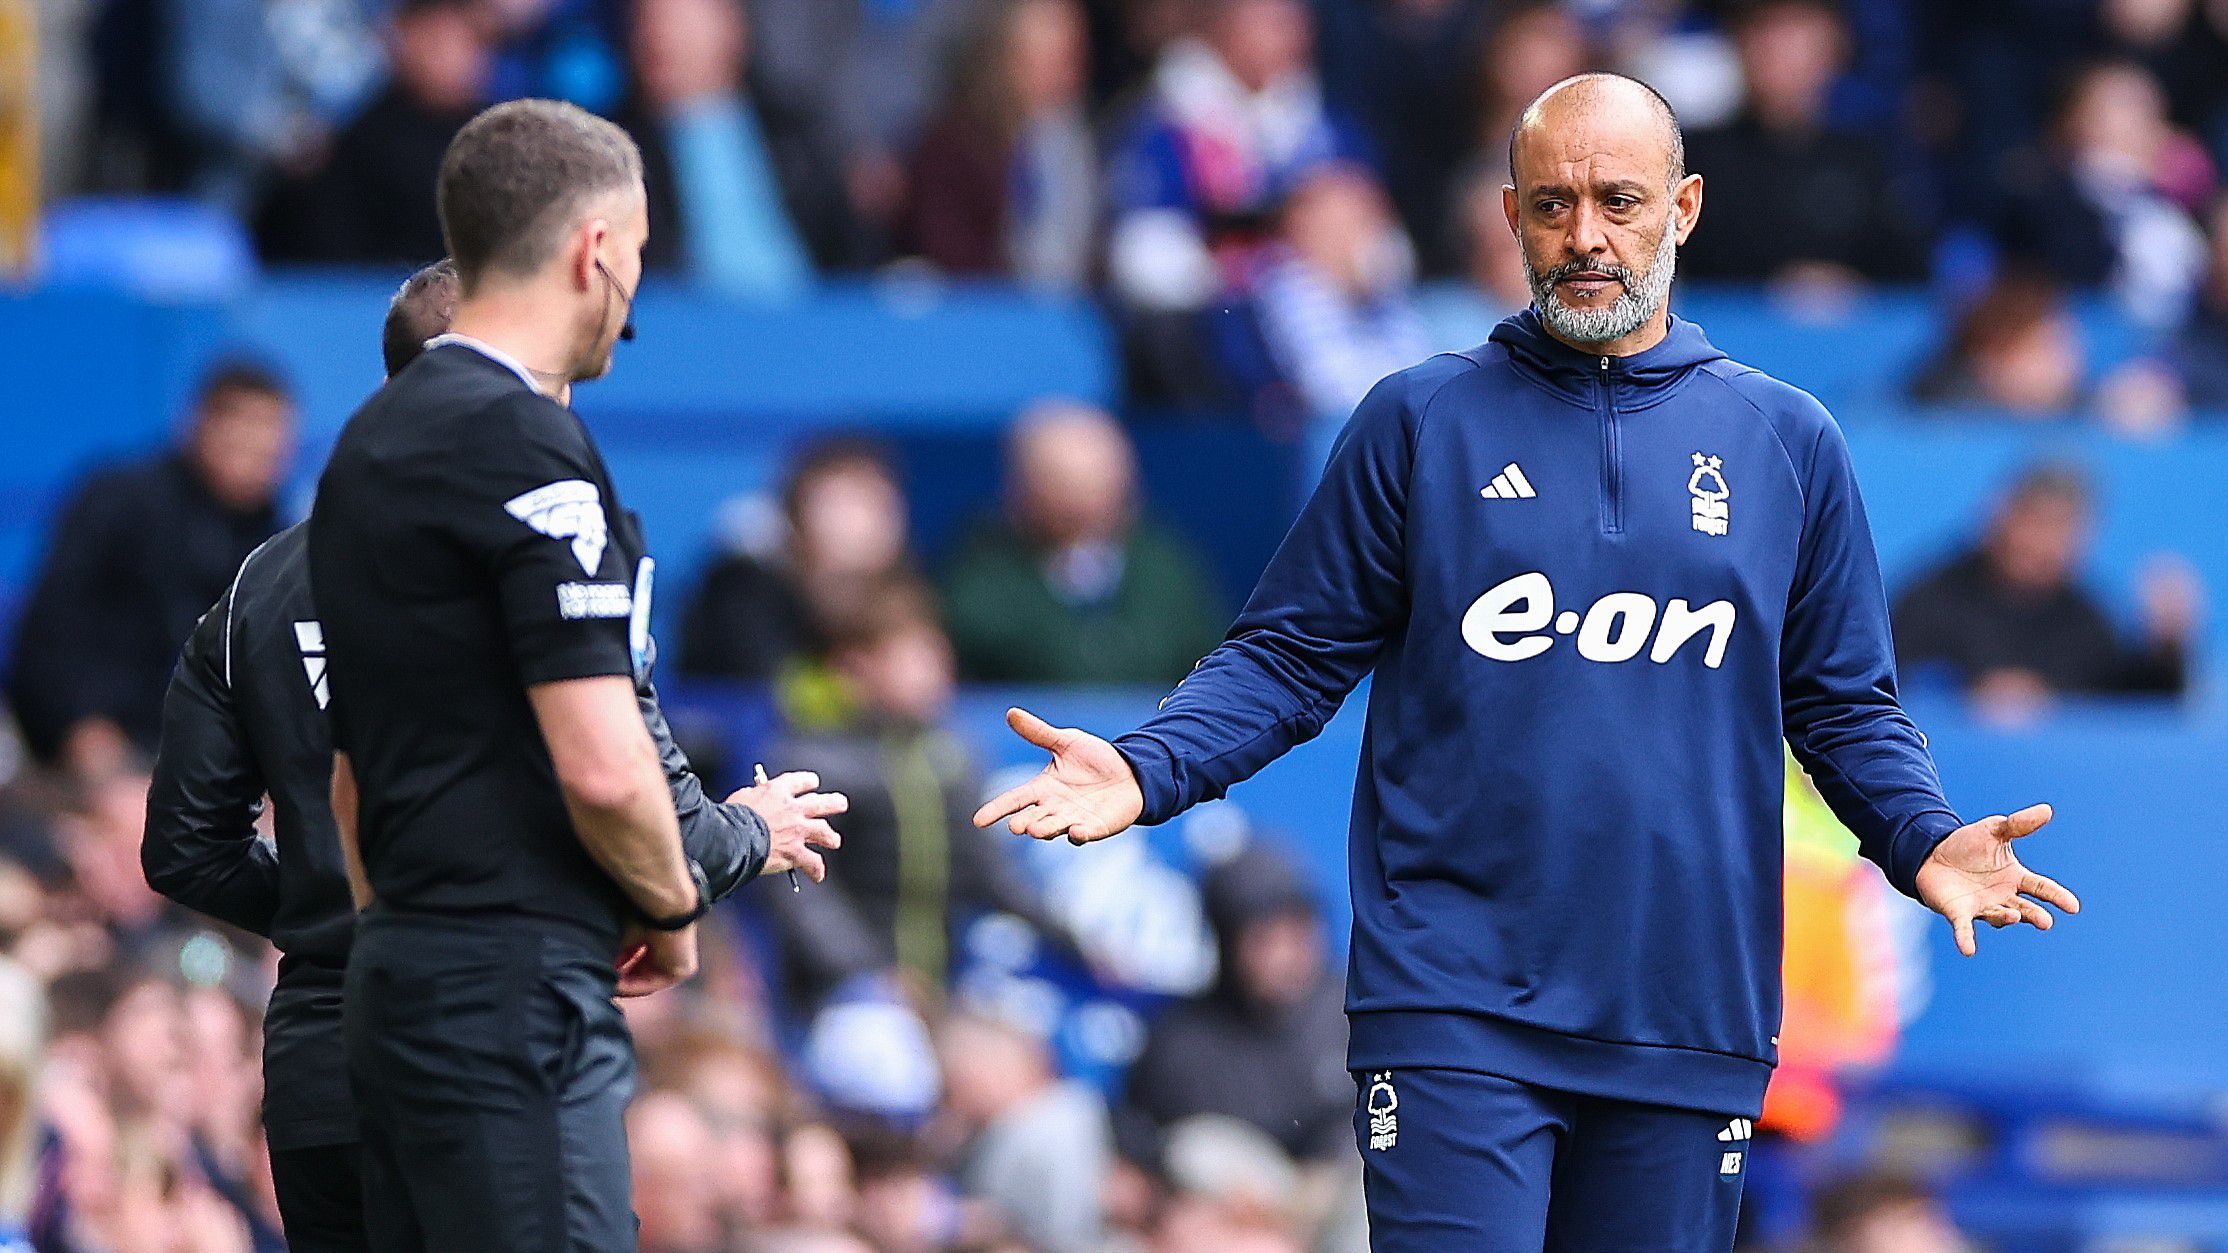 A Nottingham Forest vezetőedzője, Nuno Espírito Santo sem volt elégedett a játékvezető ítéleteivel az Everton elleni bajnokin